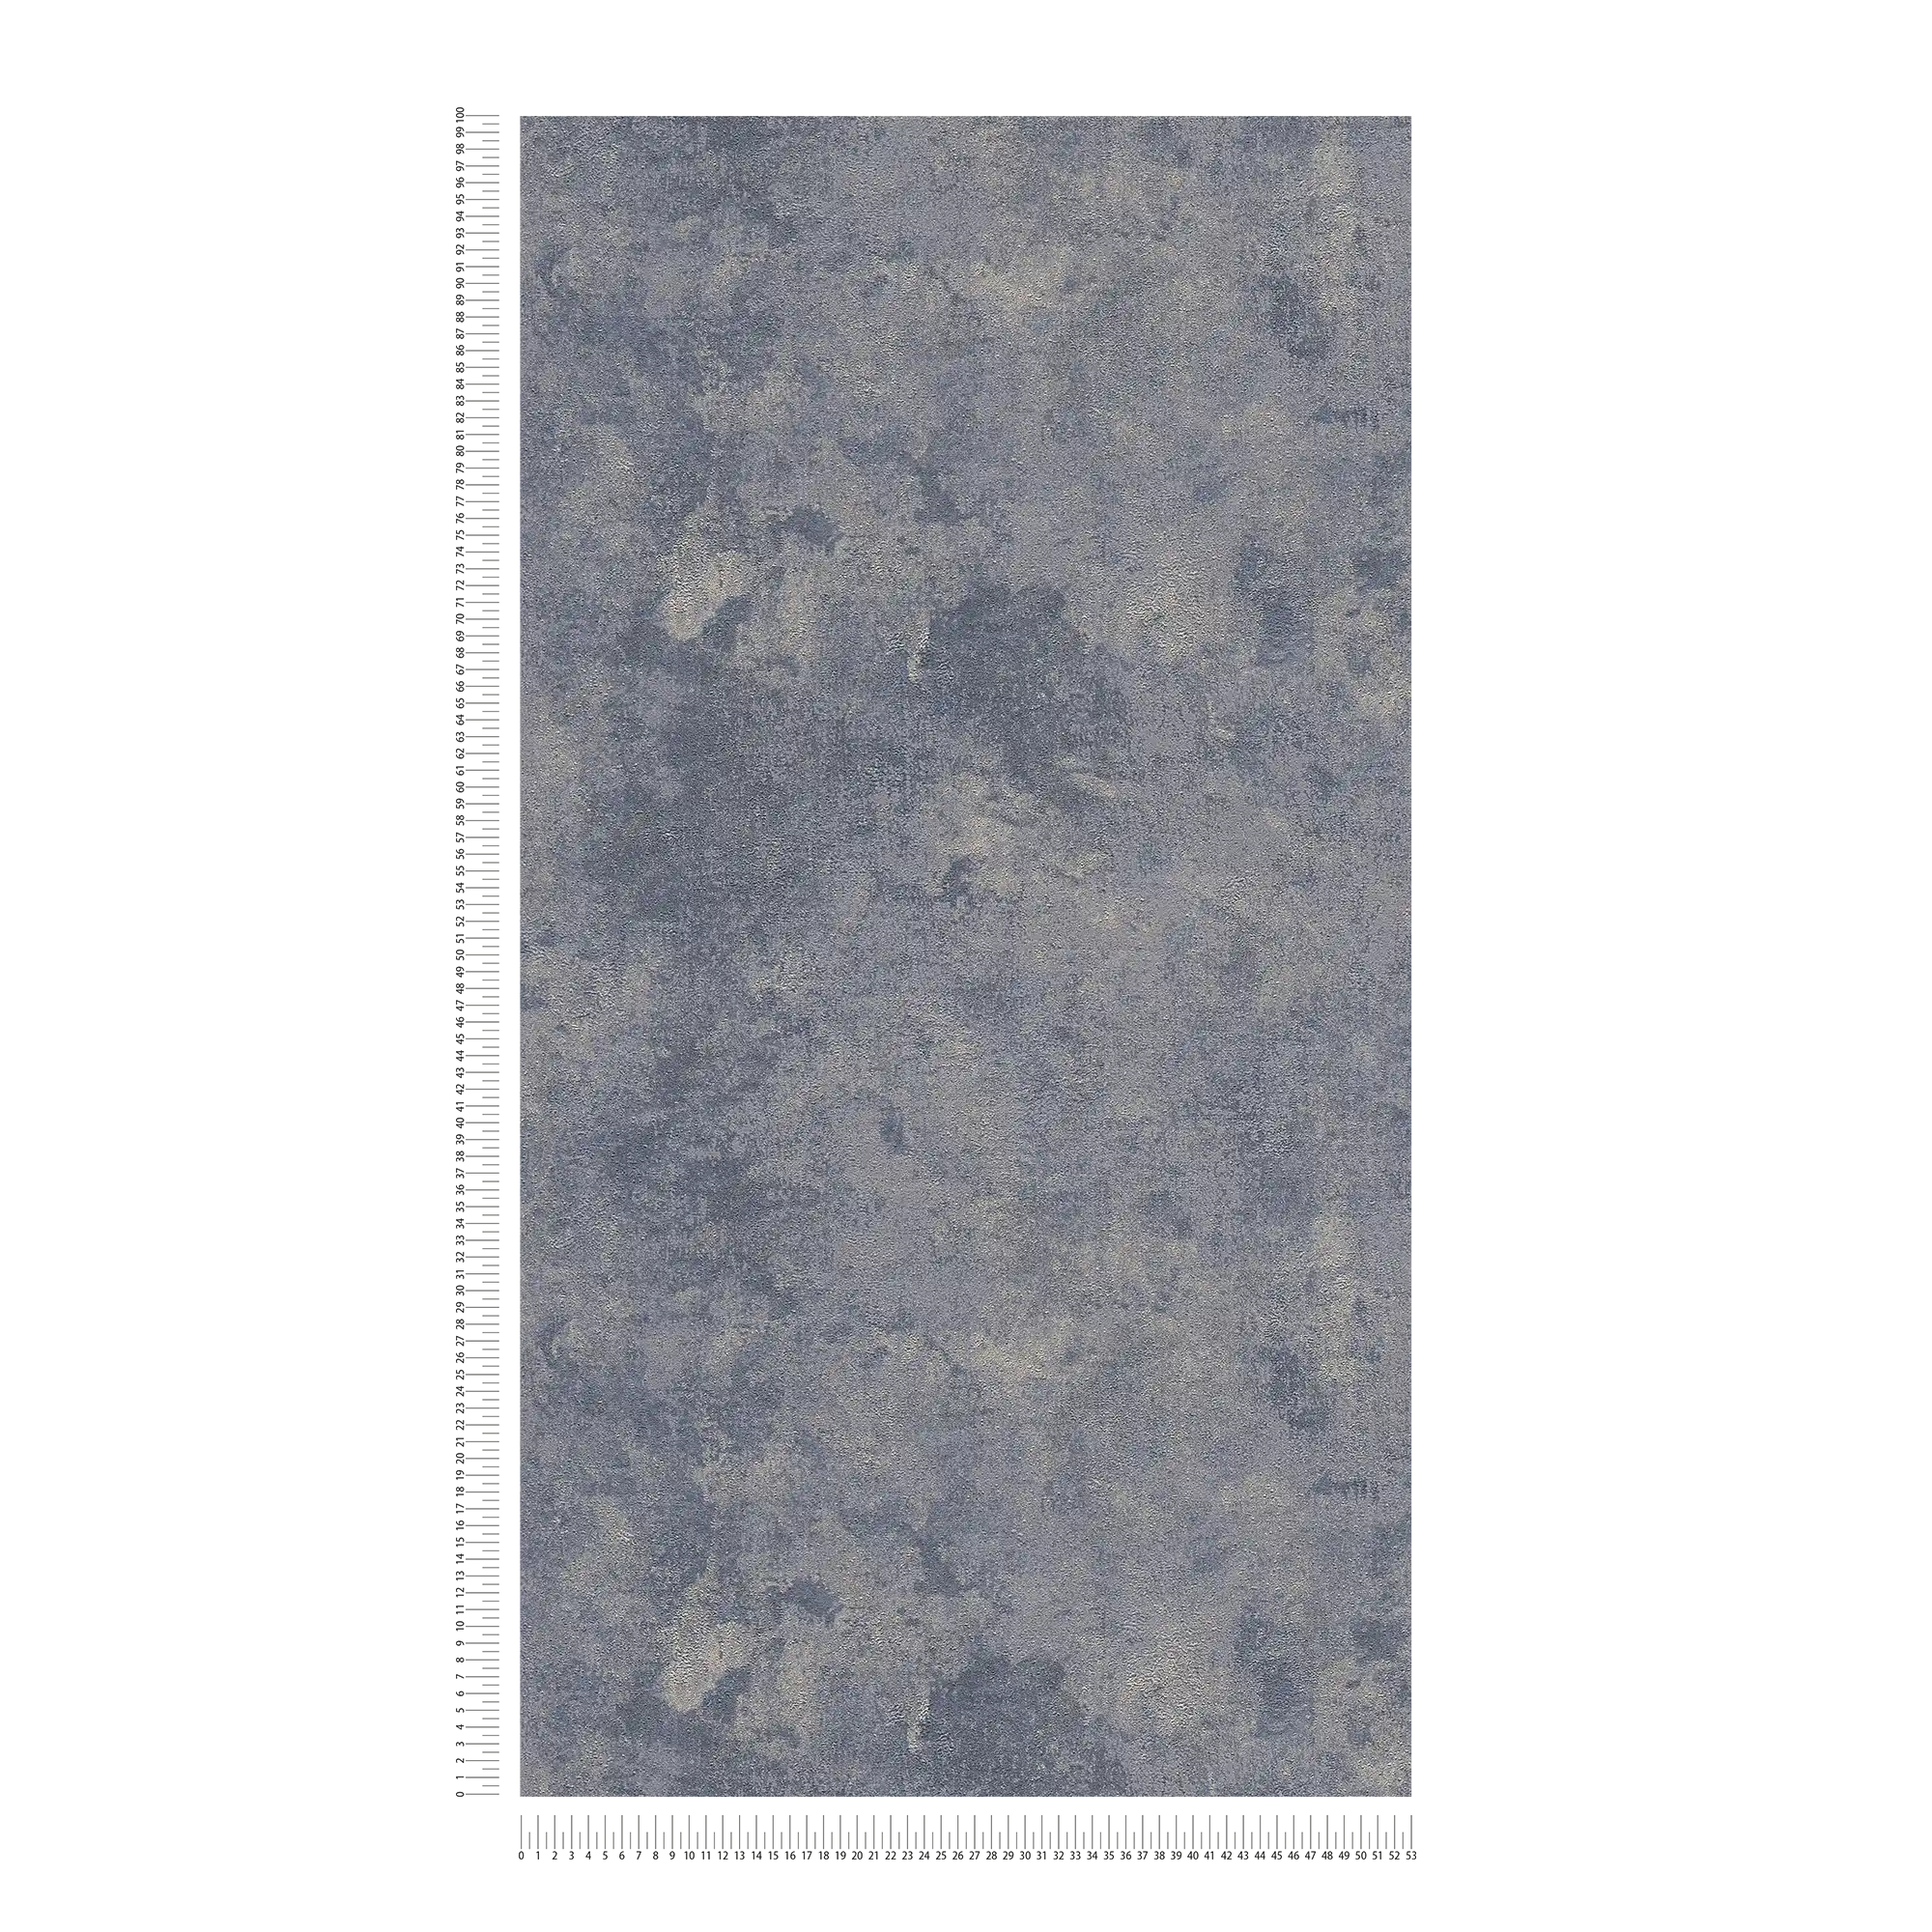             Papier peint texture rugueuse & effet brillant - bleu, argent, gris
        